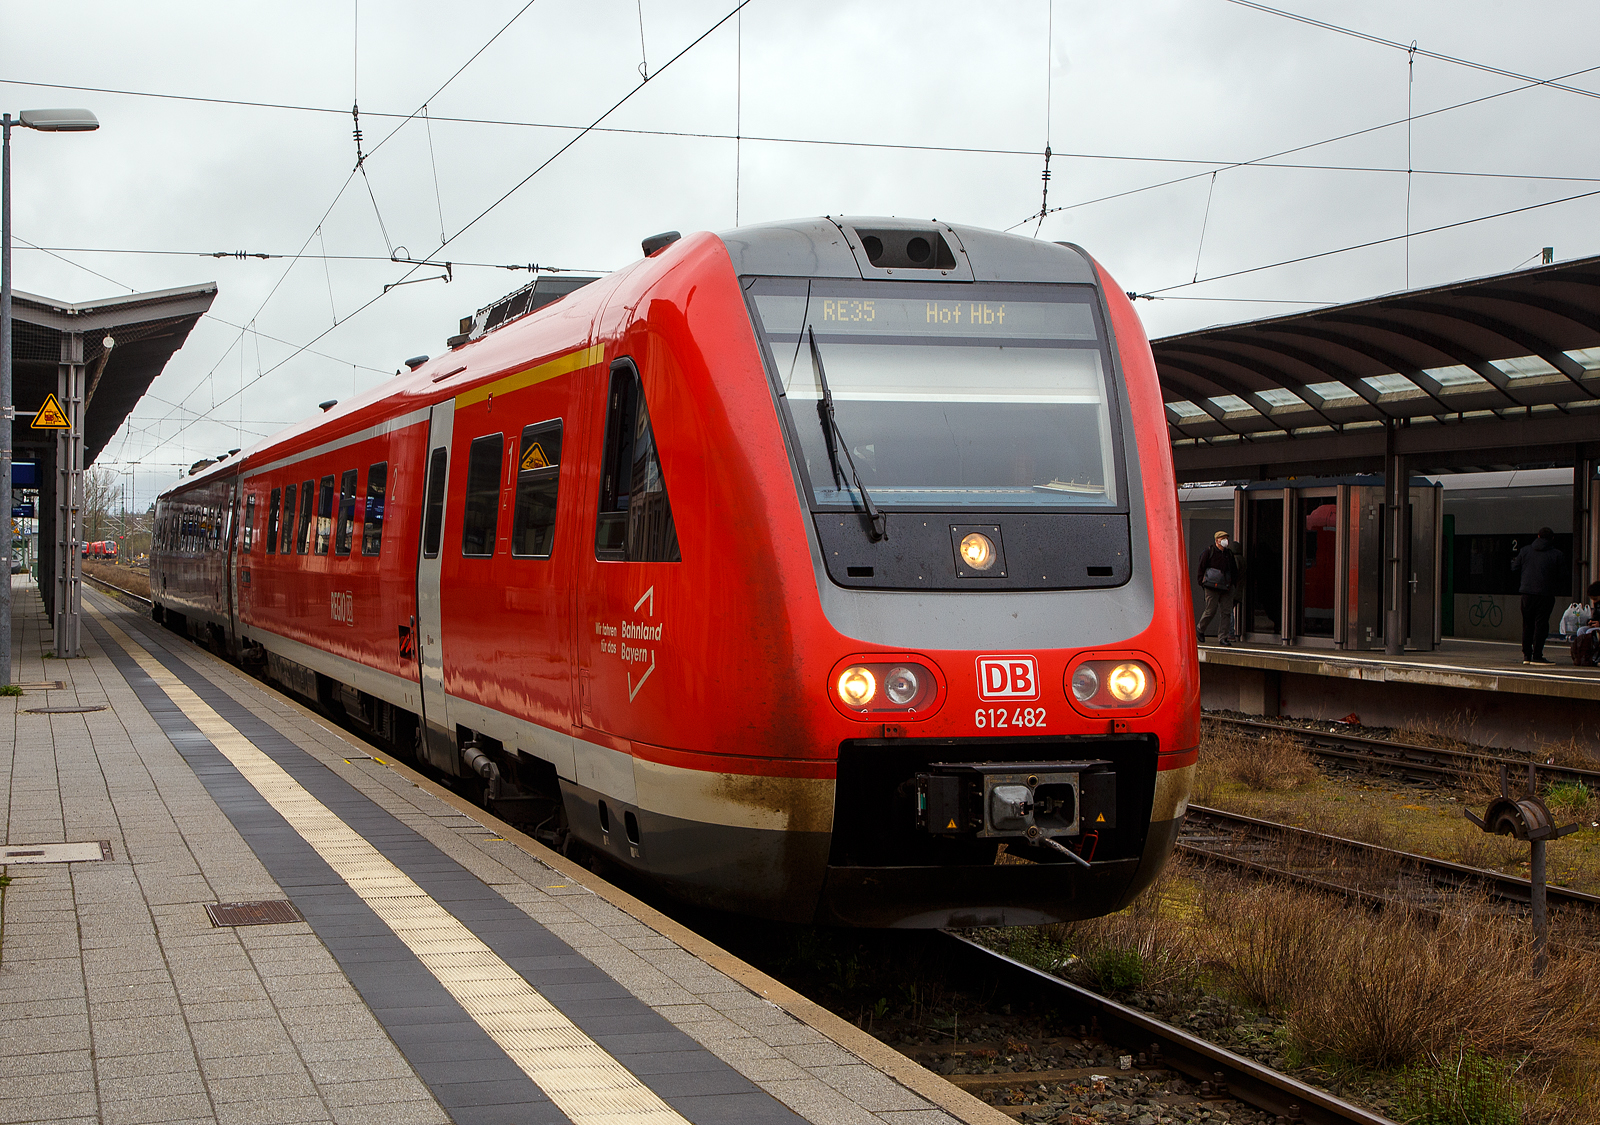 Der Dieseltriebwagen mit Neigetechnik 612 482 / 612 982 (95 80 0612 482-9 D-DB / 95 80 0612 982-8 D-DB), ein Bombardier  RegioSwinger  der DB Regio Bayern, hat als RE 35 „Main-Saale-Express“ (Bamberg – Lichtenfels –Hof), am 17.04.2023 seinen Zielbahnhof Hof erreicht.

Der Triebzug wurde 2003 von Bombardier unter den Fabriknummer 24173 und 24174 gebaut.

Die Fahrzeuge der Baureihe 612 sind Neigetechnik-Nahverkehrsdieseltriebwagen der Deutschen Bahn. Die Fahrzeuge werden vor allem als Regional-Express und Interregio-Express auf bogenreichen Strecken eingesetzt. Der Hersteller Bombardier Transportation bezeichnet die Fahrzeuge als RegioSwinger.

Der VT 612 ist ein zweiteiliger Dieseltriebzug mit Neigetechnik und dieselhydraulischen Antrieb. Die Neigetechnik erlaubt das bogenschnelle fahren. Durch das bogenschnelle fahren kann die Geschwindigkeit im Vergleich zu „herkmmlichen“ Schienenfahrzeugen in kurvenreichen Strecken wesentlich erhht werden, da sich das Fahrzeug bis zu 8 Grad neigen kann. hnlich wie ein serpentinenpassierender Motorradfahrer durchfhrt der Zug die Kurve, was erhebliche Fahrzeitverkrzung mglich macht. Voraussetzung hierfr ist jedoch nicht nur die Fahrzeugtechnik, sondern auch umfangreiche technische Anpassungen an den Gleis- und Signalanlagen entlang der Strecke und den Bahnhfen.

Nach den problembehafteten Triebwagen der Reihe 611 unternahm die Deutsche Bahn mit der fast komplett neu konstruierten Baureihe 612 einen zweiten Versuch, einen zuverlssigen Neigetechnik-Zug aus deutscher Produktion auf die Schiene zu bringen.

Wie bei ihren Vorgngern sind bei der Baureihe 612 beide Wagen motorisiert. Verwendet werden dabei 19-Liter-Cummins- Sechszylinder-Reihenmotor-Dieselmotoren des Typs QSK19-R mit je 563 kW Leistung, die eine Geschwindigkeit von 160 km/h ermglicht. Die Kraftbertragung erfolgt hydraulisch ber je ein Strmungsgetriebe, in das auerdem eine hydrodynamische Bremse integriert ist. Die Triebdrehgestelle liegen bei beiden Wagen einer Einheit am Kurzkuppelende, die Drehgestelle unter den Fhrerstnden sind Laufdrehgestelle. Der Wagenkasten sttzt sich ber Luftfedern und eine Wiege auf den Drehgestellen ab und ist elektrisch 8 zu jeder Seite neigbar. Die Steuerung der Neigetechnik bernimmt das System Neicontrol-E, das ber Beschleunigungssensoren in den Enddrehgestellen Beginn und Ende eines Bogens feststellen kann und den Wagenkasten abhngig von Bogenradius und Fahrgeschwindigkeit neigt. Dies erlaubt gegenber Fahrzeugen ohne Neigetechnik eine Geschwindigkeitssteigerung um bis zu 30 %, sofern die befahrene Strecke sicherungs- und oberbautechnisch fr das bogenschnelle Fahren ausgebaut ist. Zustzlich zu den Betriebsbremsen besitzen die Triebwagen Federspeicherbremsen als Feststellbremsen und fr Schnellbremsungen Magnetschienenbremsen in den Laufdrehgestellen.

ber die selbstttigen Scharfenberg-Kupplungen an den Fhrerstandsenden lassen sich bis zu vier Doppeltriebwagen kuppeln und vielfachsteuern. Die Scharfenberg-Kupplungen verbinden die Druckluft- und Steuerleitungen selbstttig mit. Die Bordrechner der Triebzge stellen automatisch die Zugkonfiguration fest. Fr die Aufrechterhaltung gewisser Grundfunktionen wie Beleuchtung und Heizung ist jeder Triebwagen selbst verantwortlich. Es kann nicht in grerem Umfang elektrische Energie zwischen den Wageneinheiten ausgetauscht werden. ber die Vielfachsteuerung gelangen Zustands- und Strungsmeldungen zum aktiven Fhrerstand.

TECHNISCHE DATEN:
Spurweite: 1.435 mm (Normalspur)
Achsformel: 2’B’+ B’2’
Lnge ber Kupplung (Scharfenberg): 51.750 mm
Achsabstand im Drehgestell: 2.450 mm
Hhe: 4.124 mm
Breite: 2.852 mm
Treibrad- und Laufraddurchmesser: 890 mm
Eigengewicht: 93 t
Dienstgewicht: 116 t
Motorleistung: 2x 560 kW
Hchstgeschwindigkeit: 160 km/h
Sitzpltze: 146
Fubodenhhe: 1.290 mm